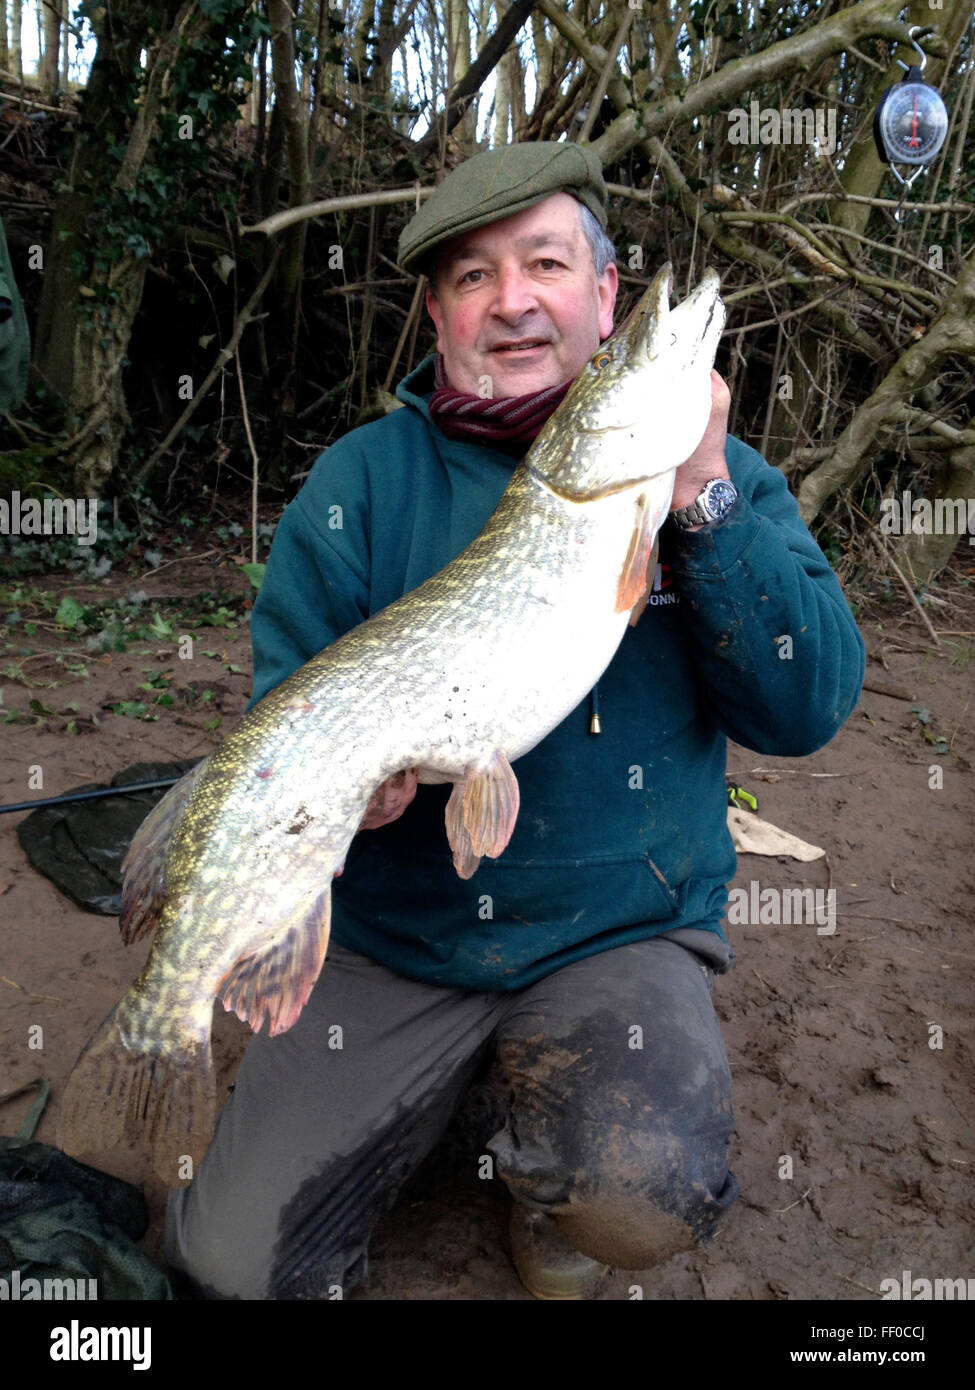 Il pescatore con 19lb 12oz luccio catturati dal fiume Wye a Warren Hay-on-Wye Powys Wales UK. La pesca ha una regola di cattura e rilascio di ritornare questi pesci selvatici al fiume conservare gli stock ittici per il futuro. Foto Stock